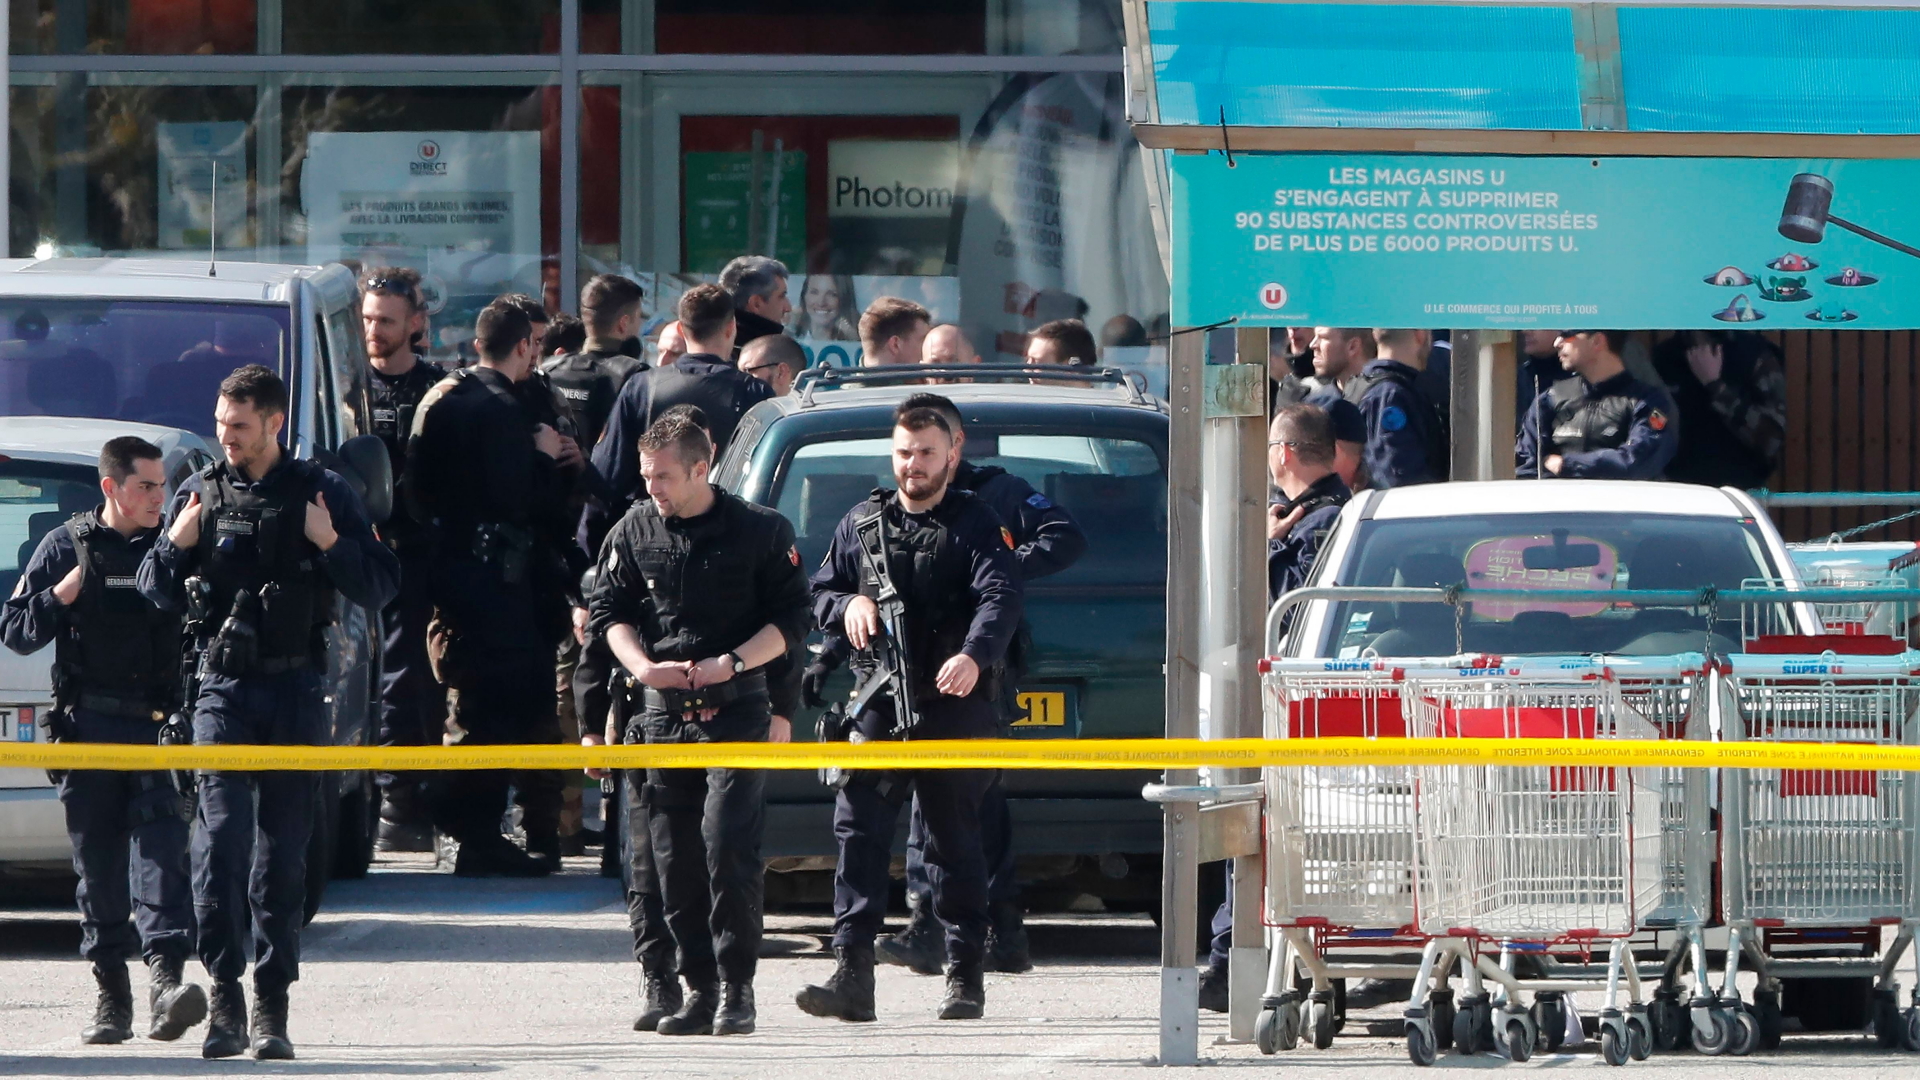 Polizisten vor dem Supermarkt in Trebes | Bildquelle: GUILLAUME HORCAJUELO/EPA-EFE/REX